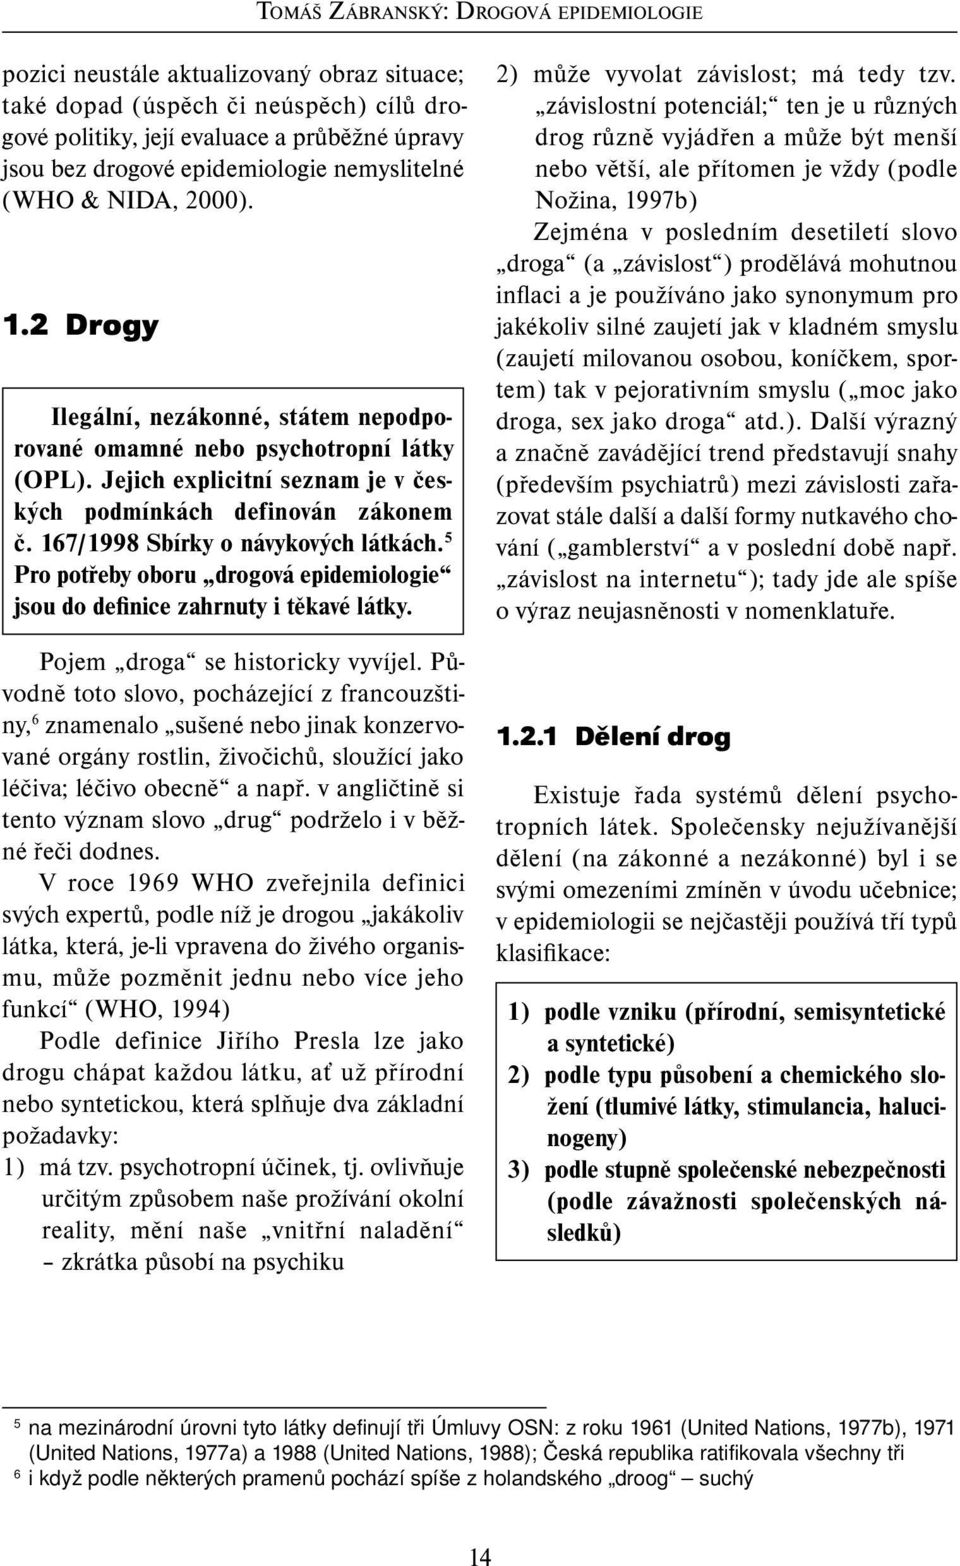 Jejich explicitní seznam je v českých podmínkách definován zákonem č. 167/1998 Sbírky o návykových látkách. 5 Pro potřeby oboru drogová epidemio logie jsou do definice zahrnuty i těkavé látky.